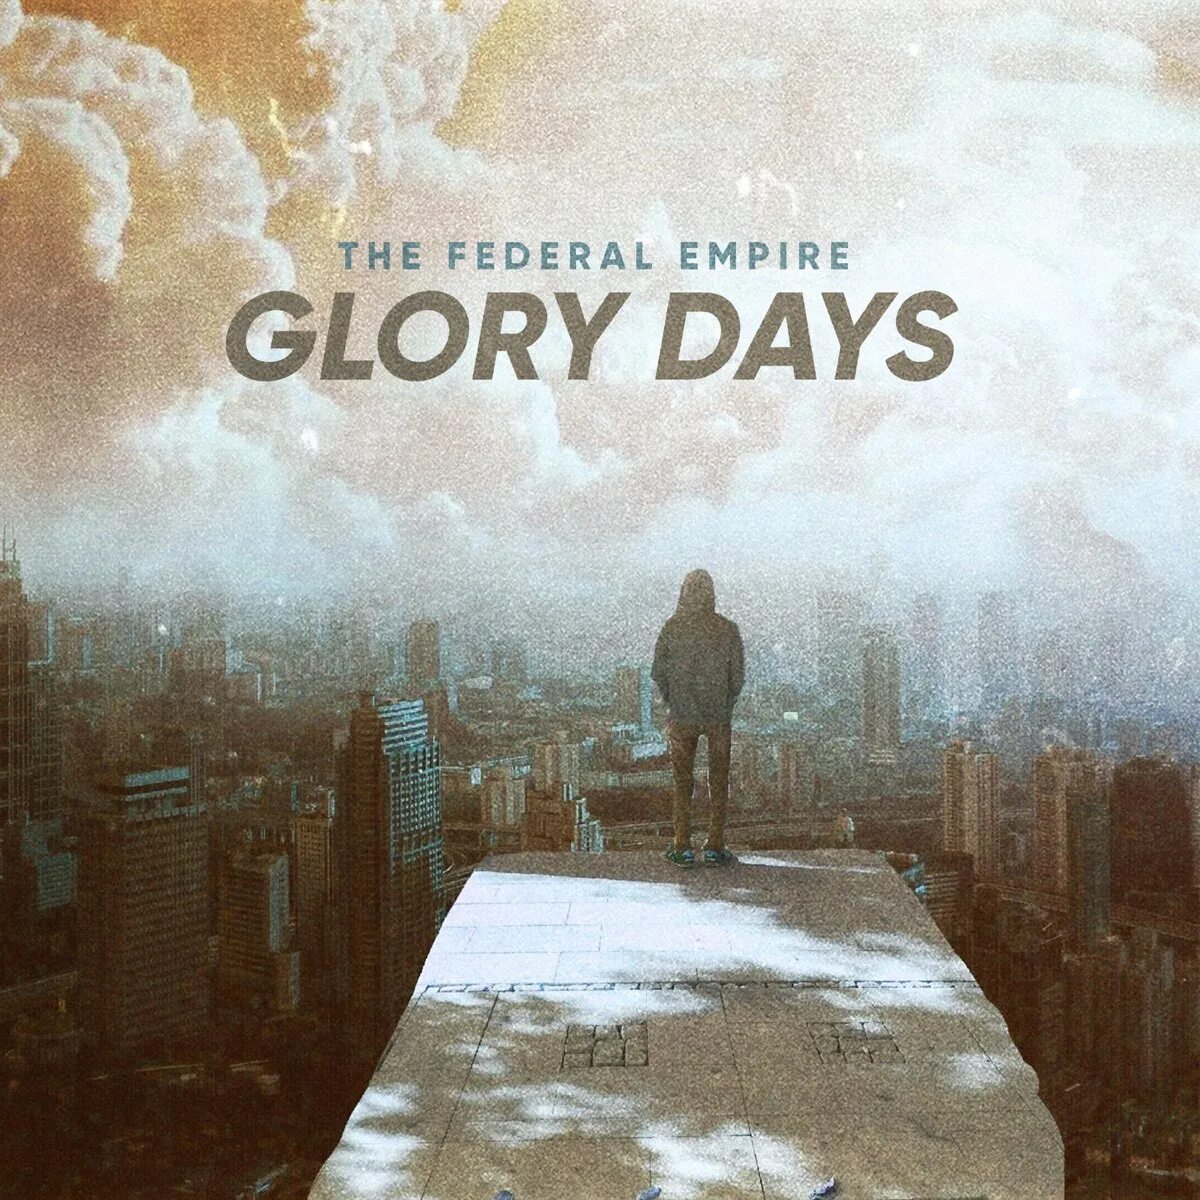 Открой сутки. The Federal Empire. The Federal Empire группа. The Federal Empire Glory Days Жанр. Glory to the Empire.